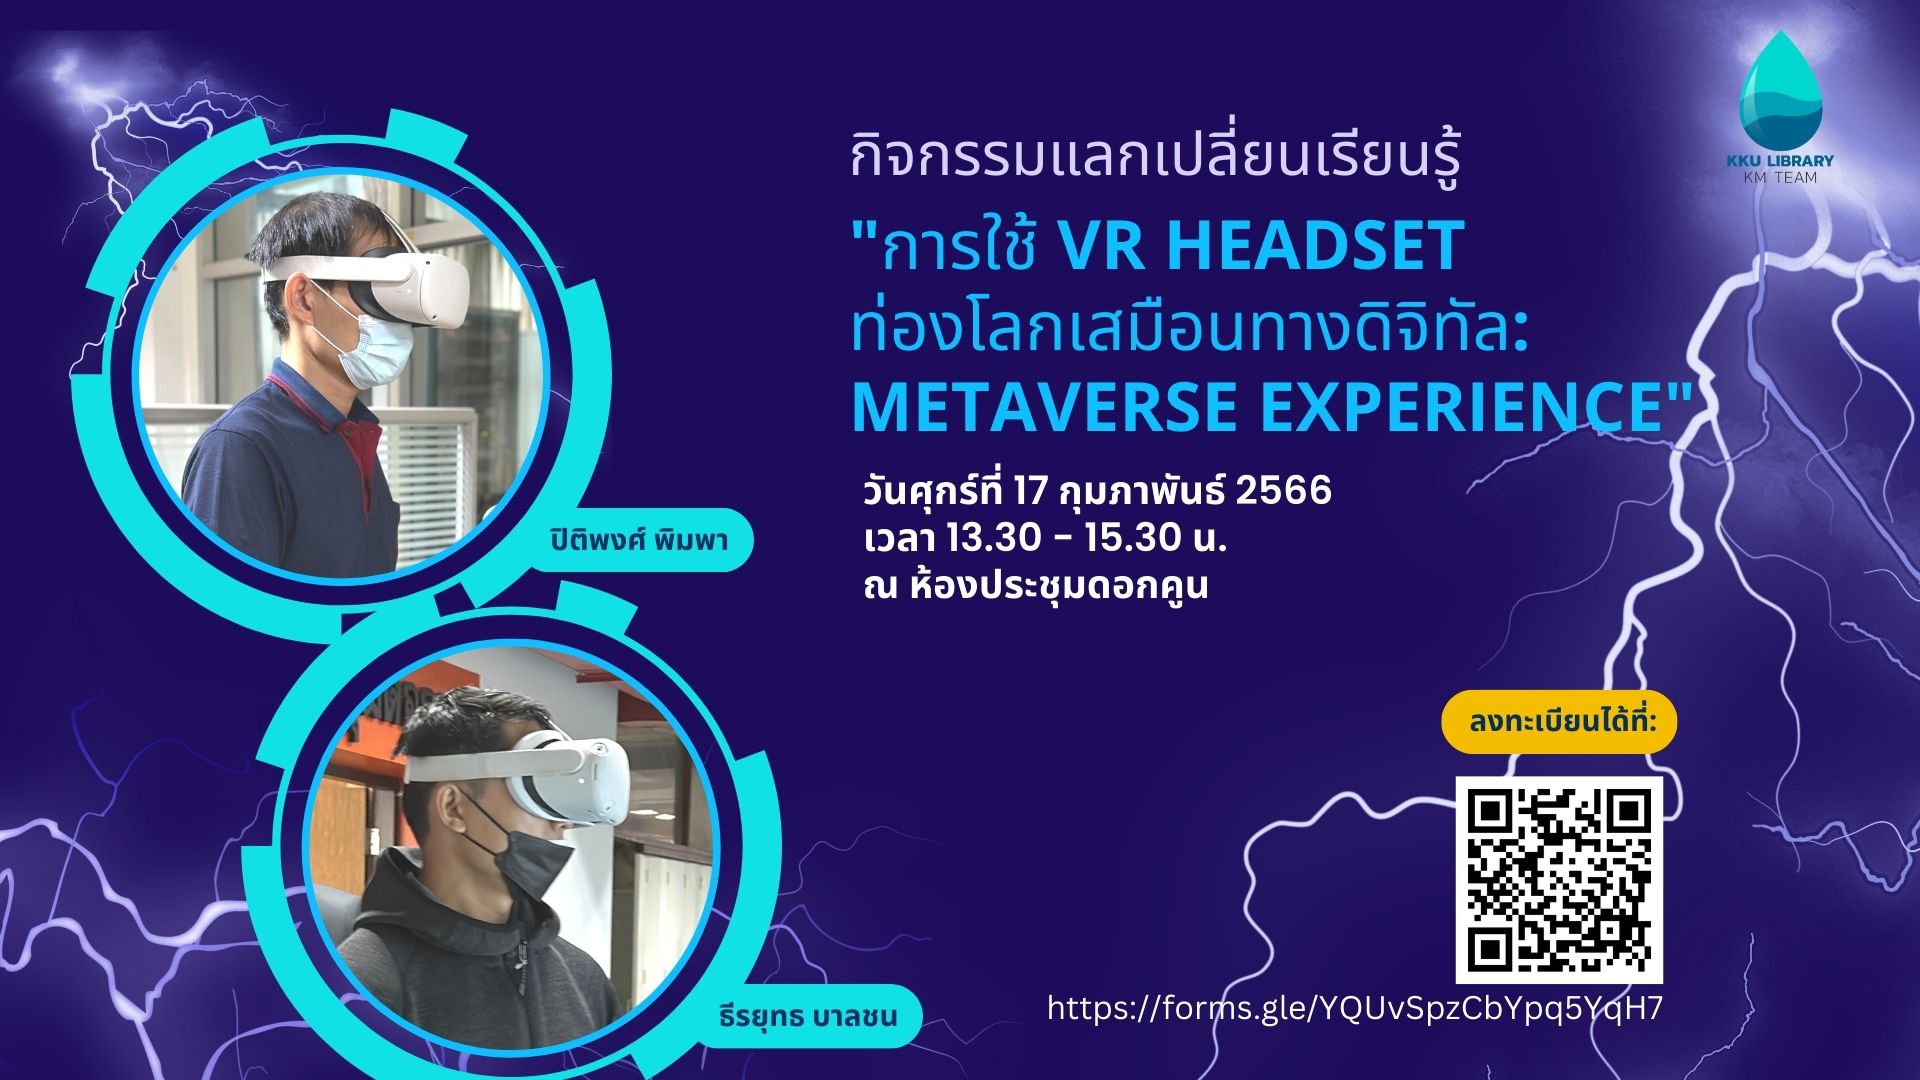 KM เรื่อง : การใช้ VR Headset ท่องโลกเสมือนทางดิจิตอล: Metaverse experience